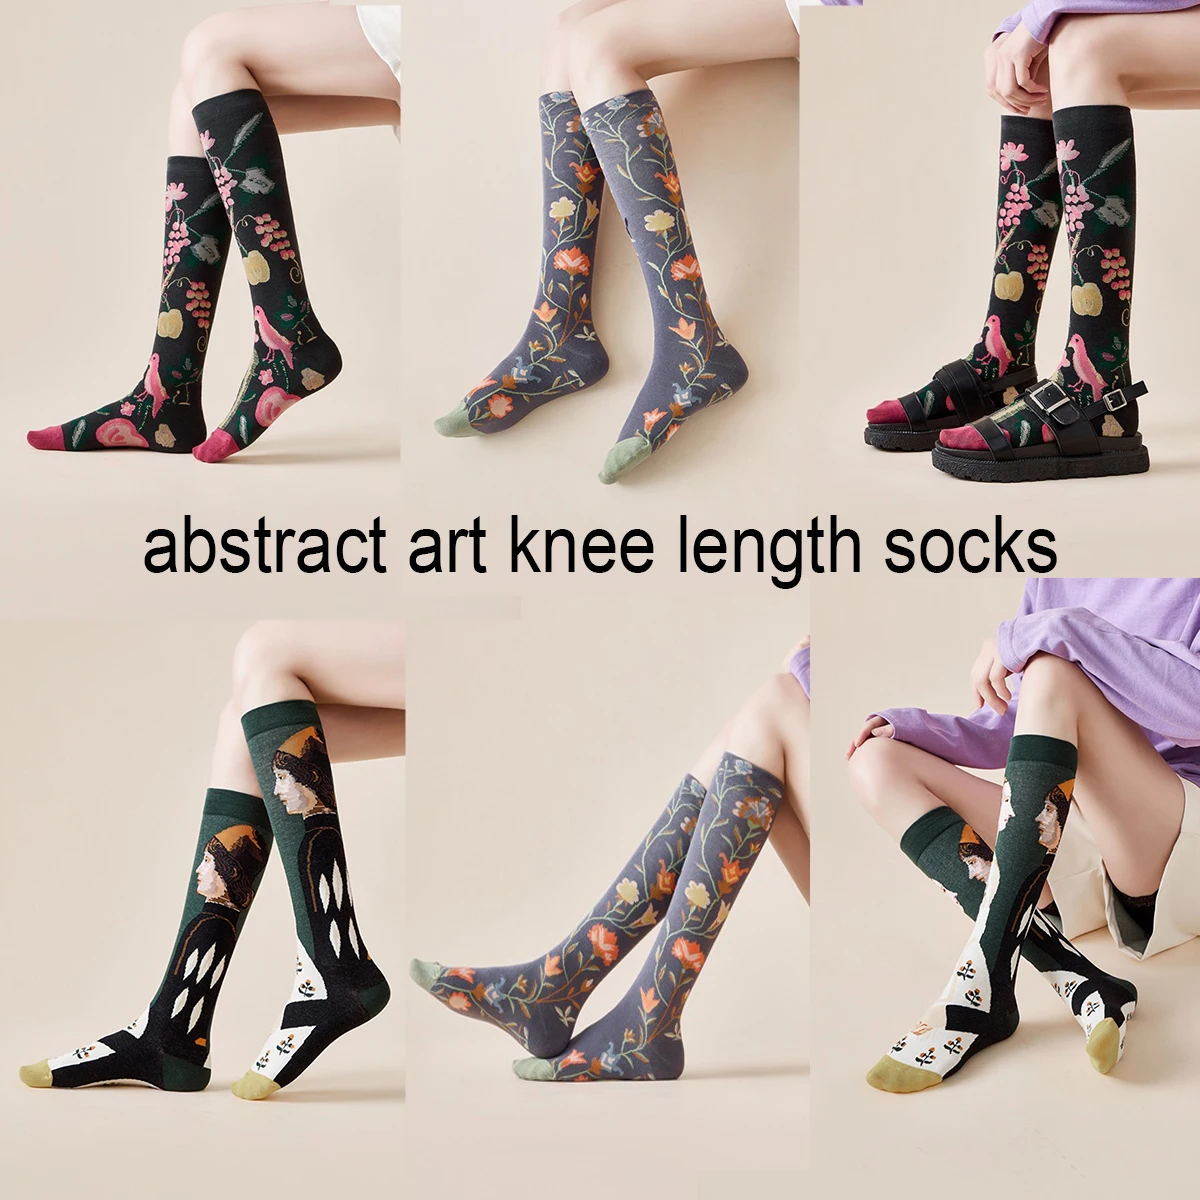 Socks Women's High Tube Calf Knee-length Socks Retro Illustration Art Abstract Street Autumn and Winter Cotton Socks High Sock